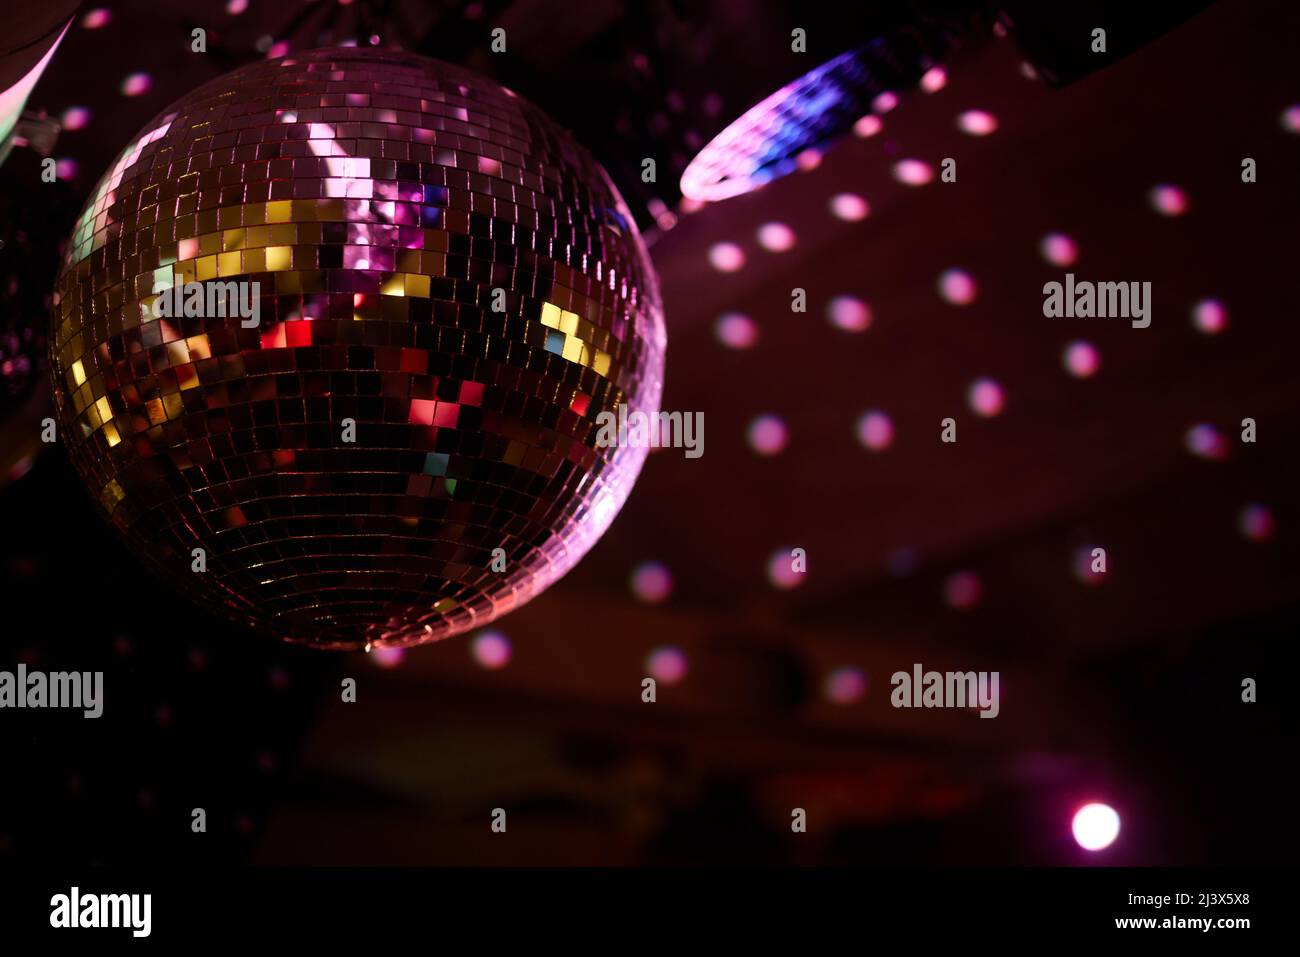 https://c8.alamy.com/compde/2j3x5x8/bunte-disco-spiegel-ball-lichter-nachtclub-hintergrund-party-lichter-disco-ball-selektiver-fokus-2j3x5x8.jpg